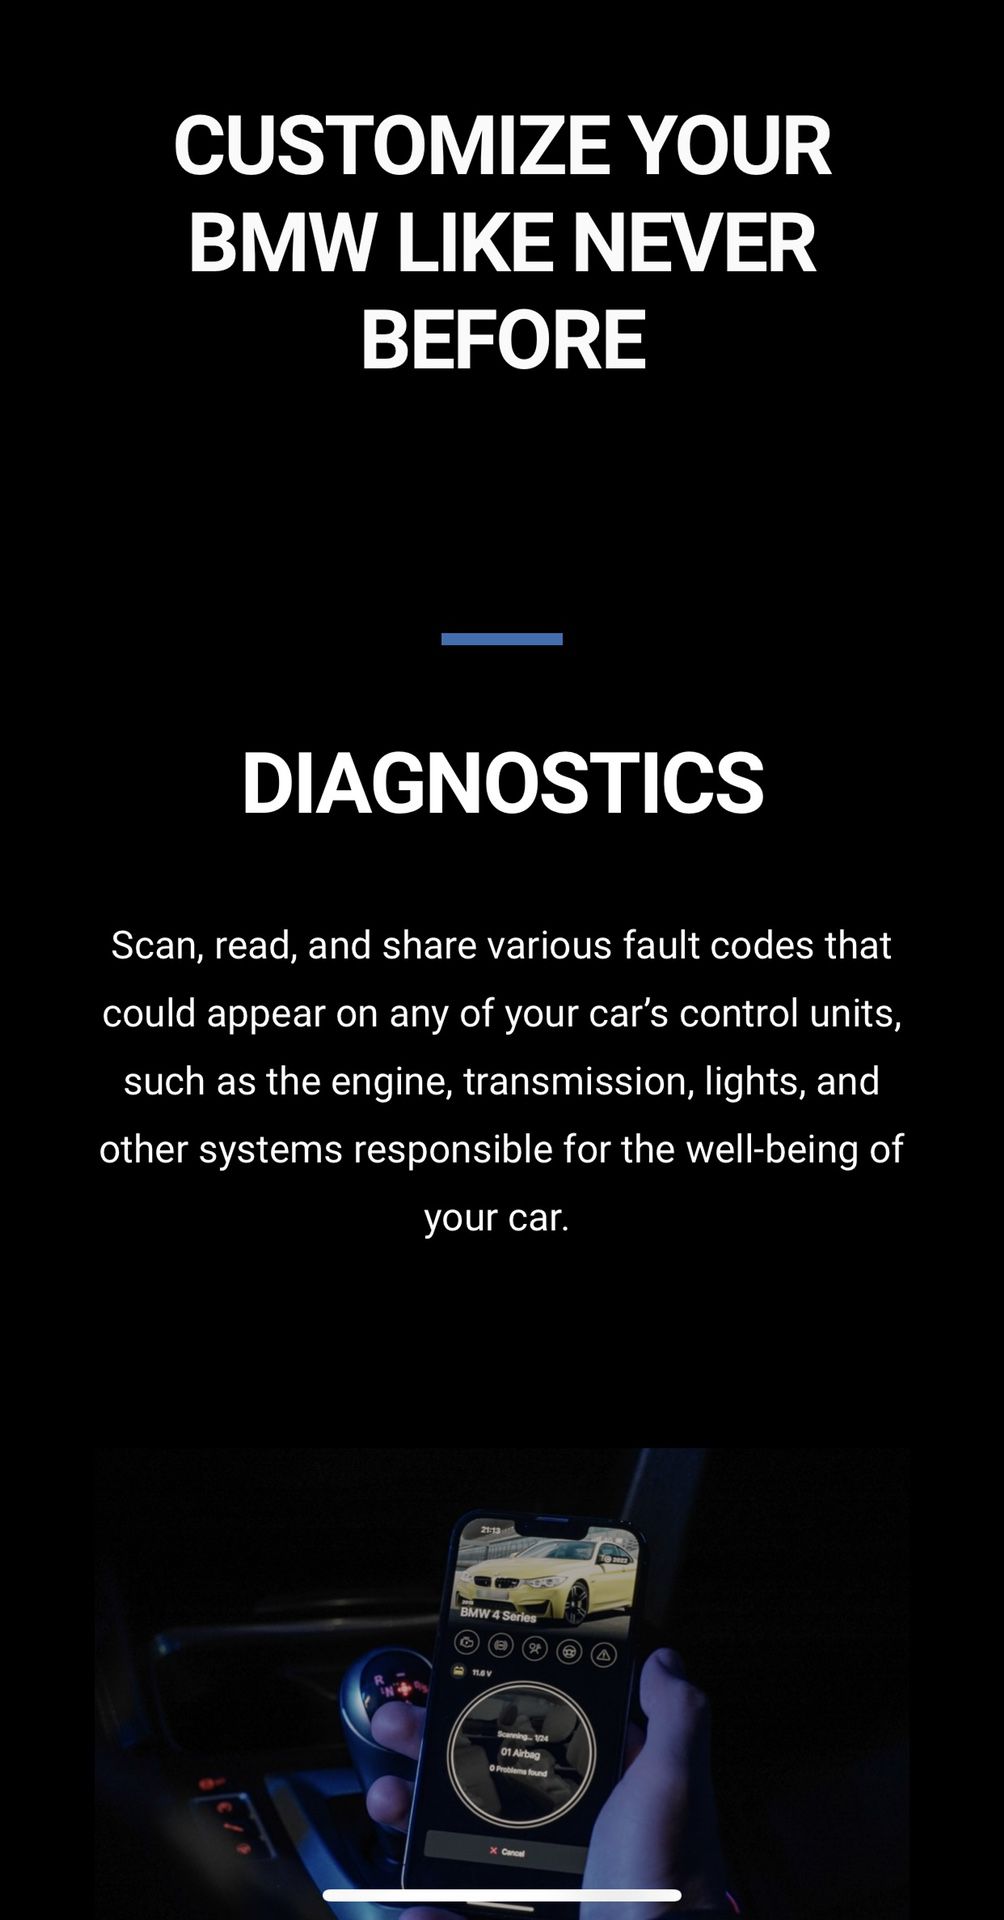 OBDeleven Next Gen OBD2 Diagnostic Bluetooth code reader Scanner for VAG Audi VW BMW